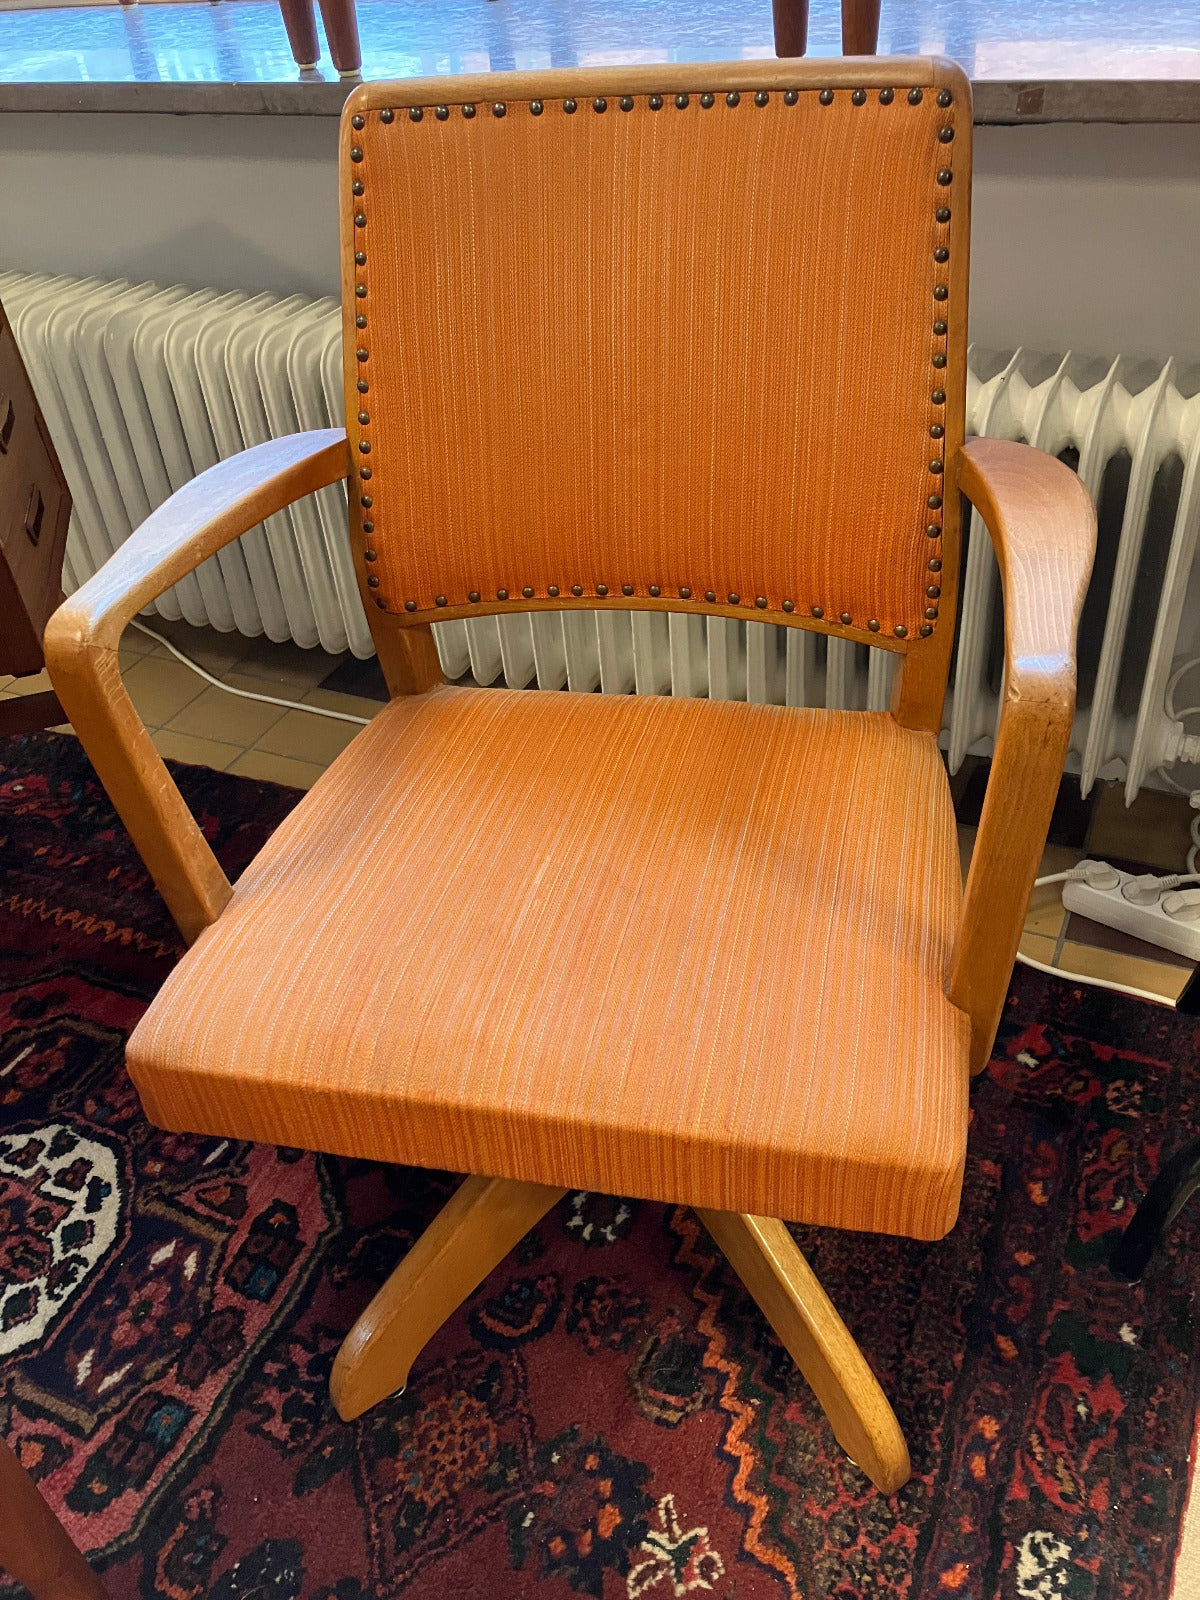 En trevlig snurrbar skrivbordsstol från 40-talet. Den har klädd sits och rygg i originaltyg, smalribbat i orange färg,